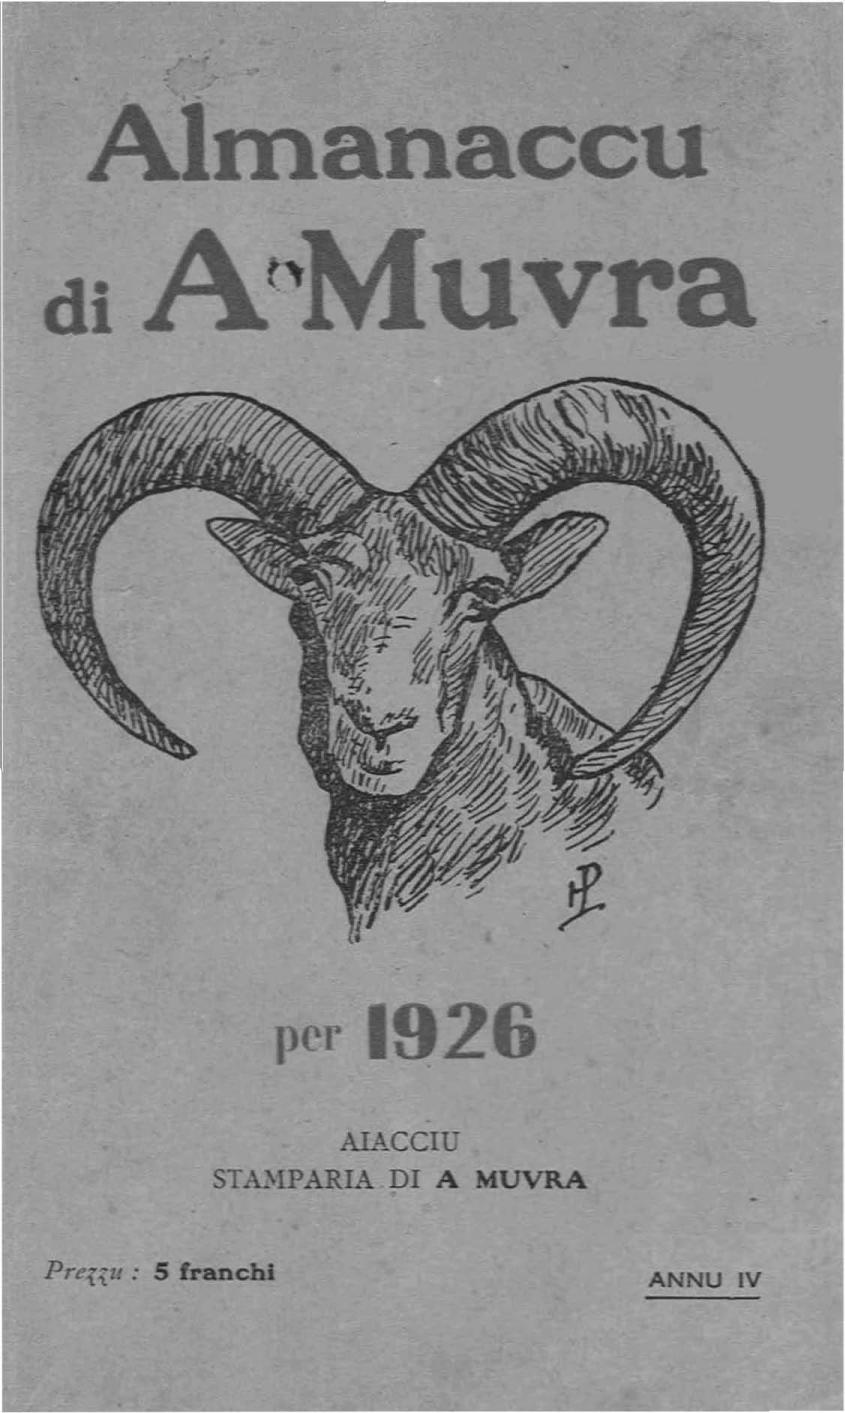 >Almanaccu di a Muvra